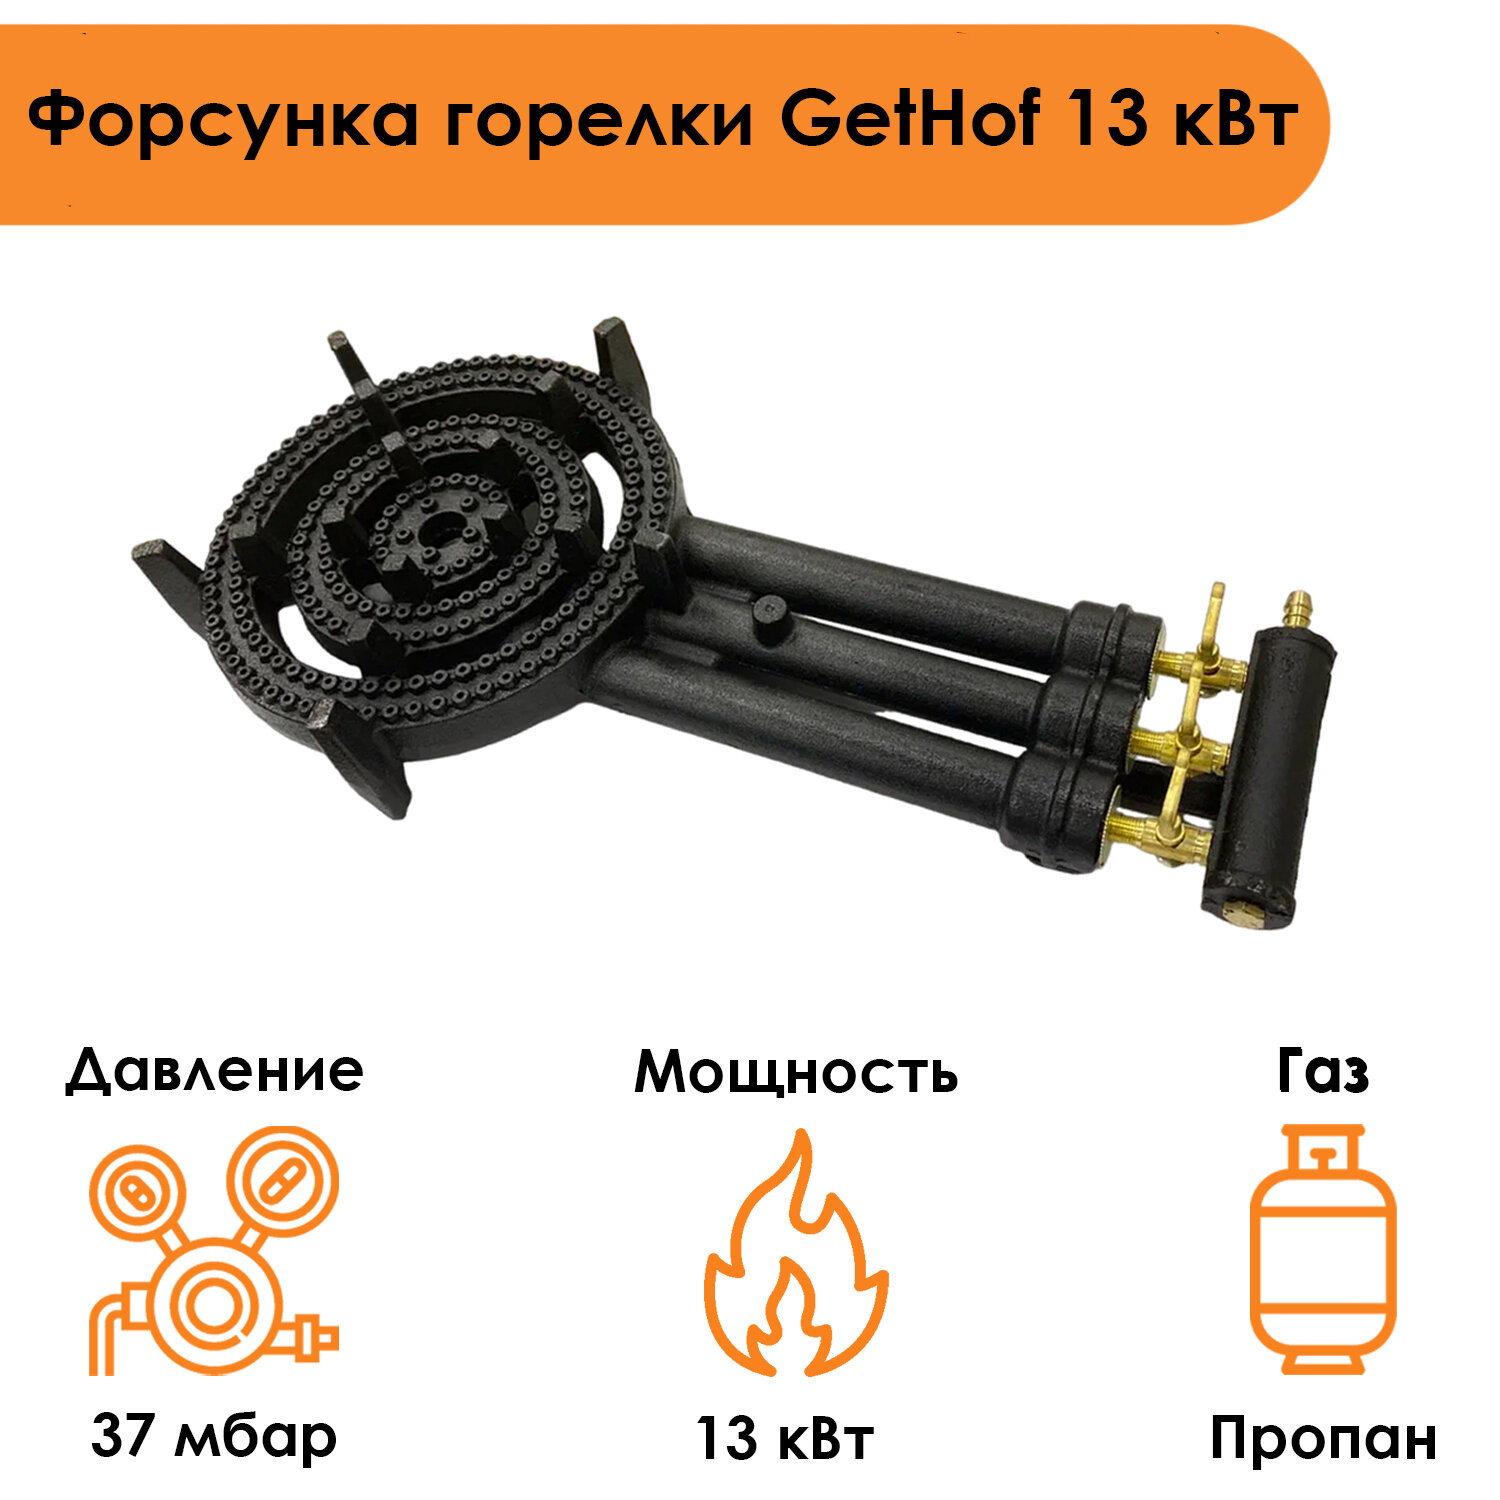 Форсунка горелки GetHof 13 кВт GB-13P (пропан)